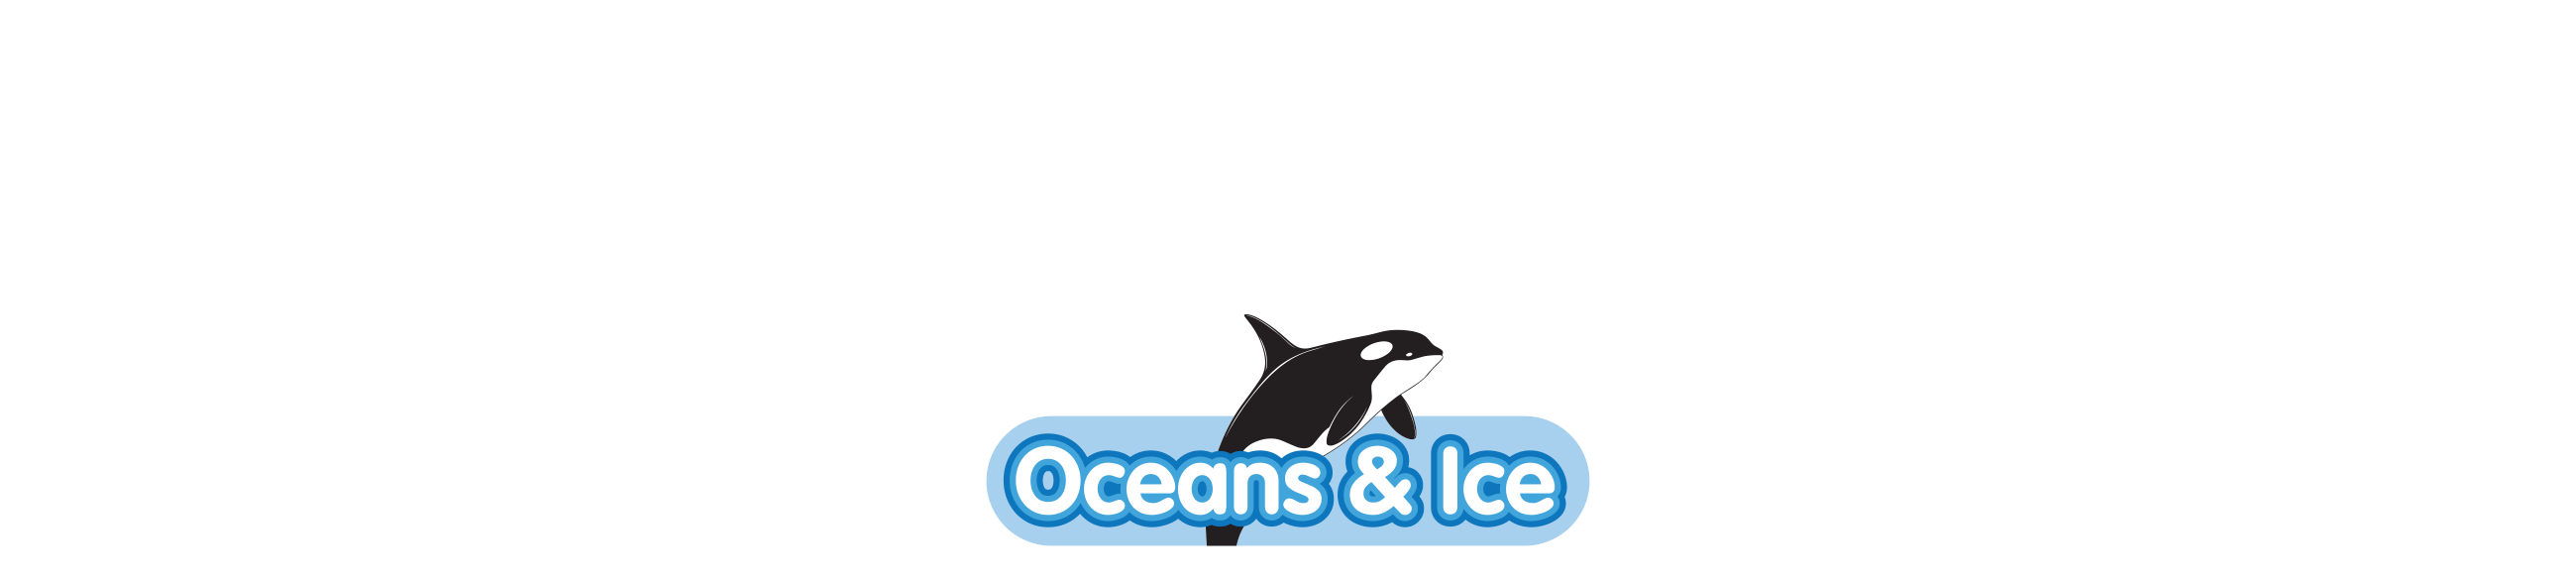 Oceans & Ice